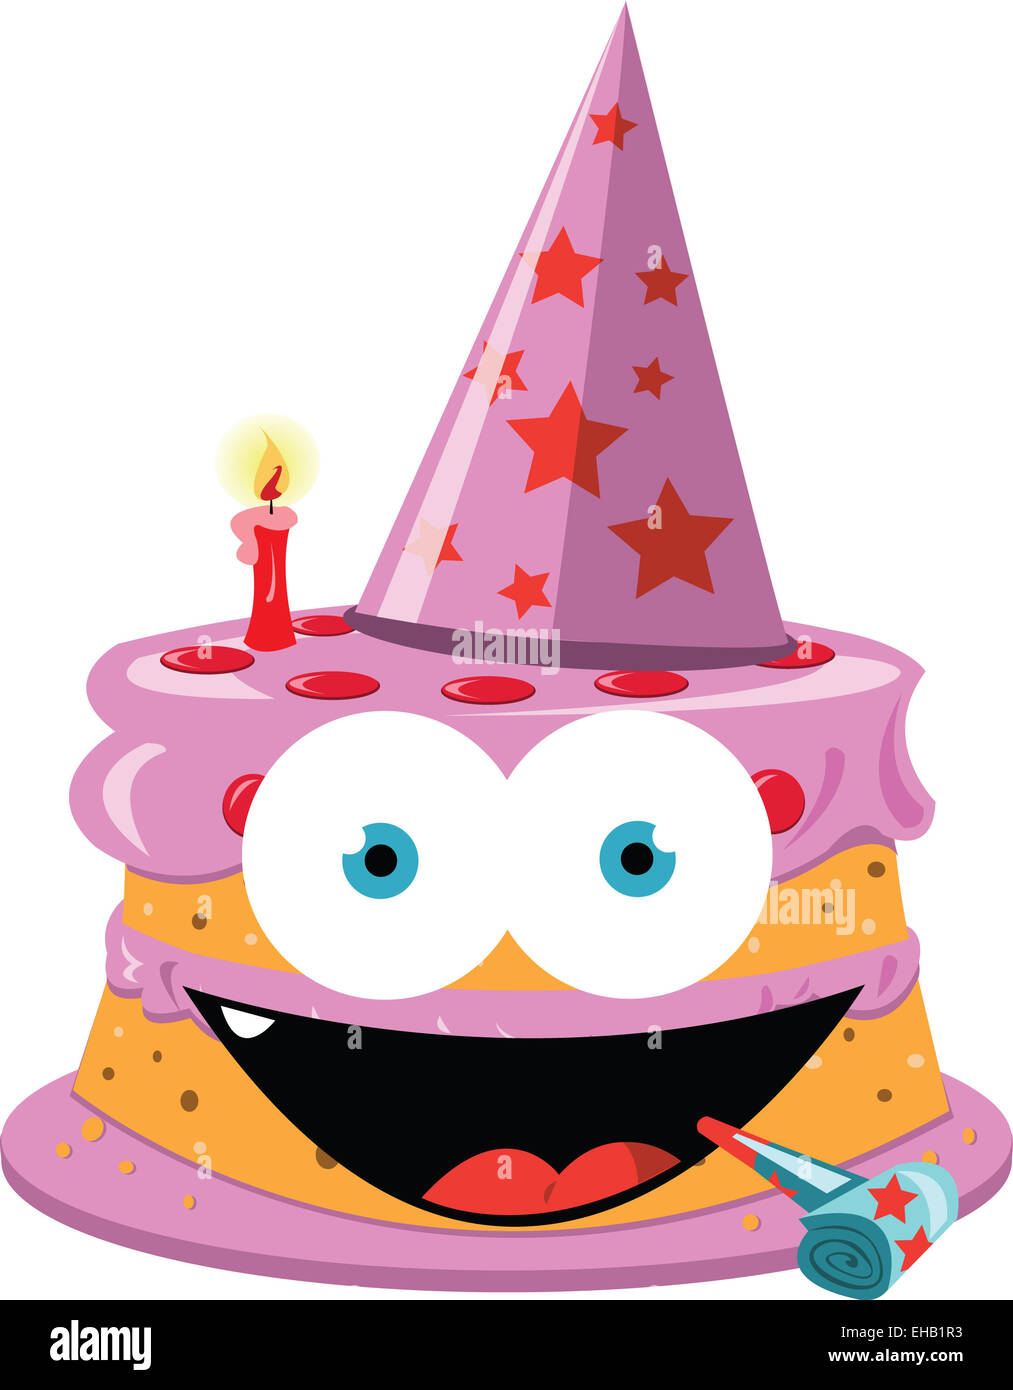 ein Vektor-Cartoon, einen lustige Kuchen mit girly Farben darstellt Stockfoto